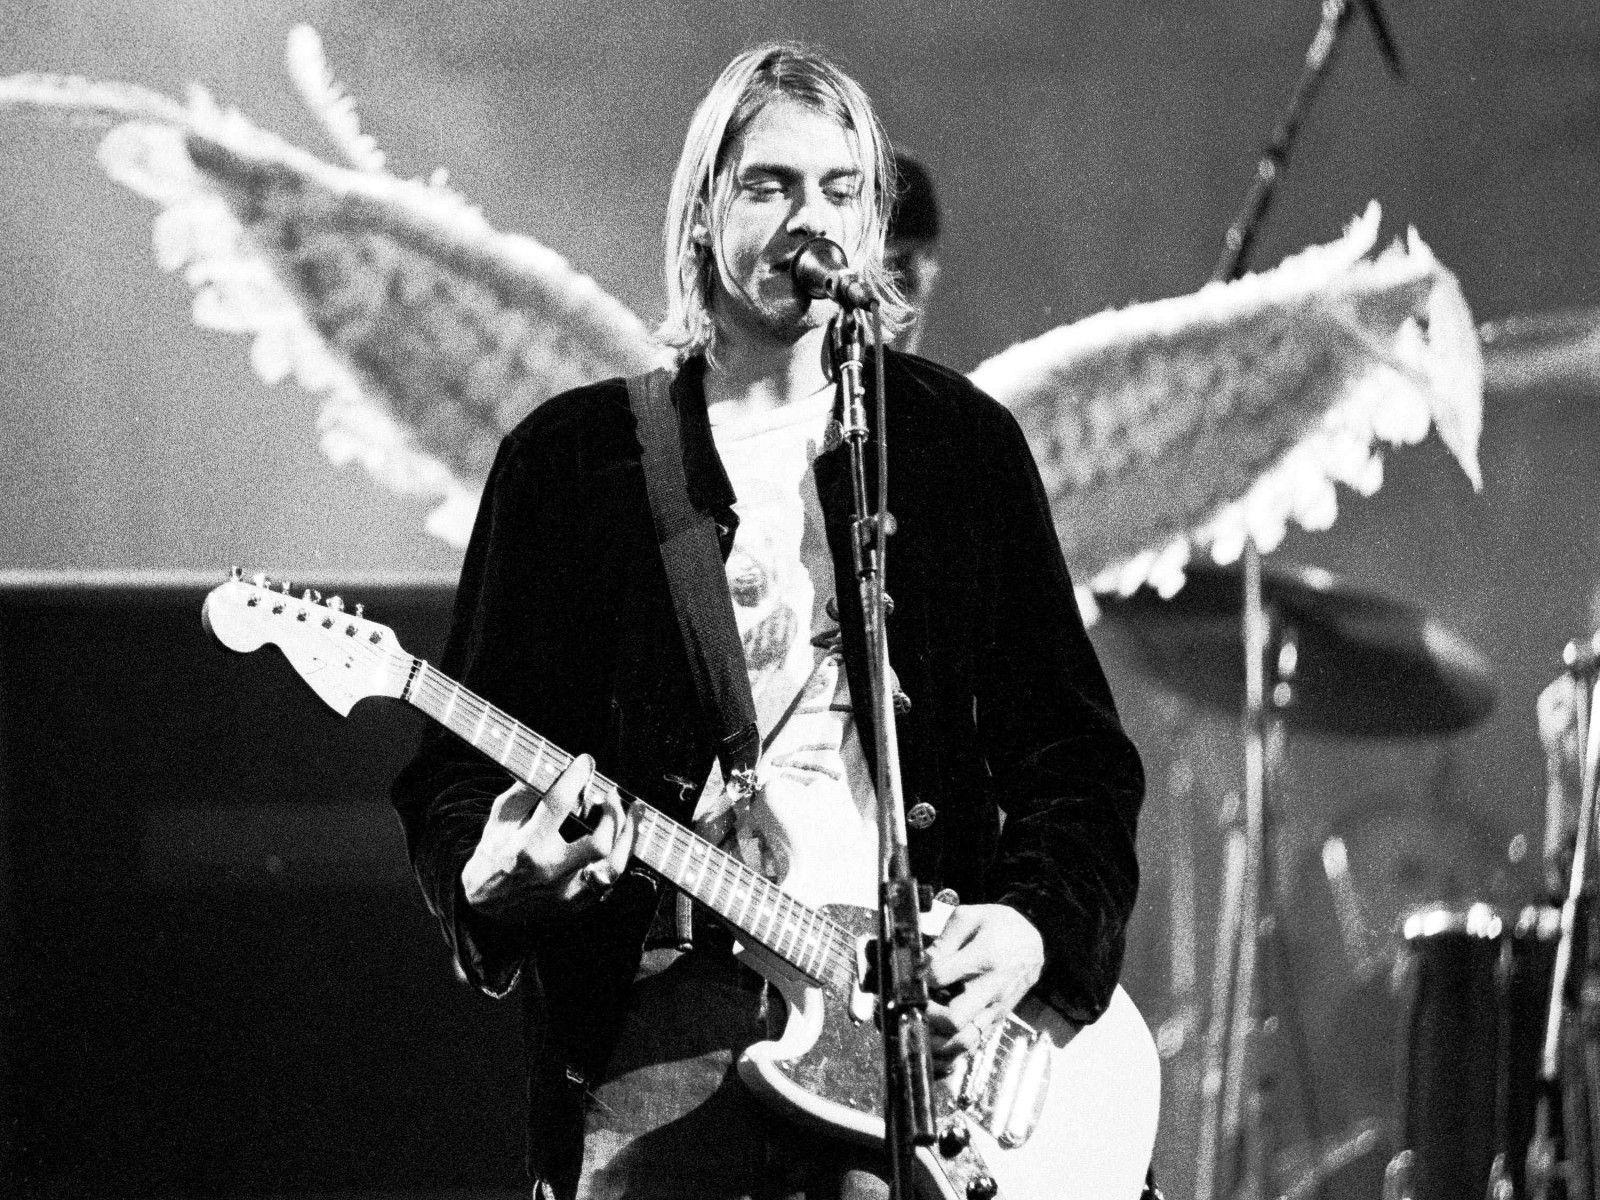 Kurt Cobain Wallpapers - Top Free Kurt Cobain Backgrounds - WallpaperAccess